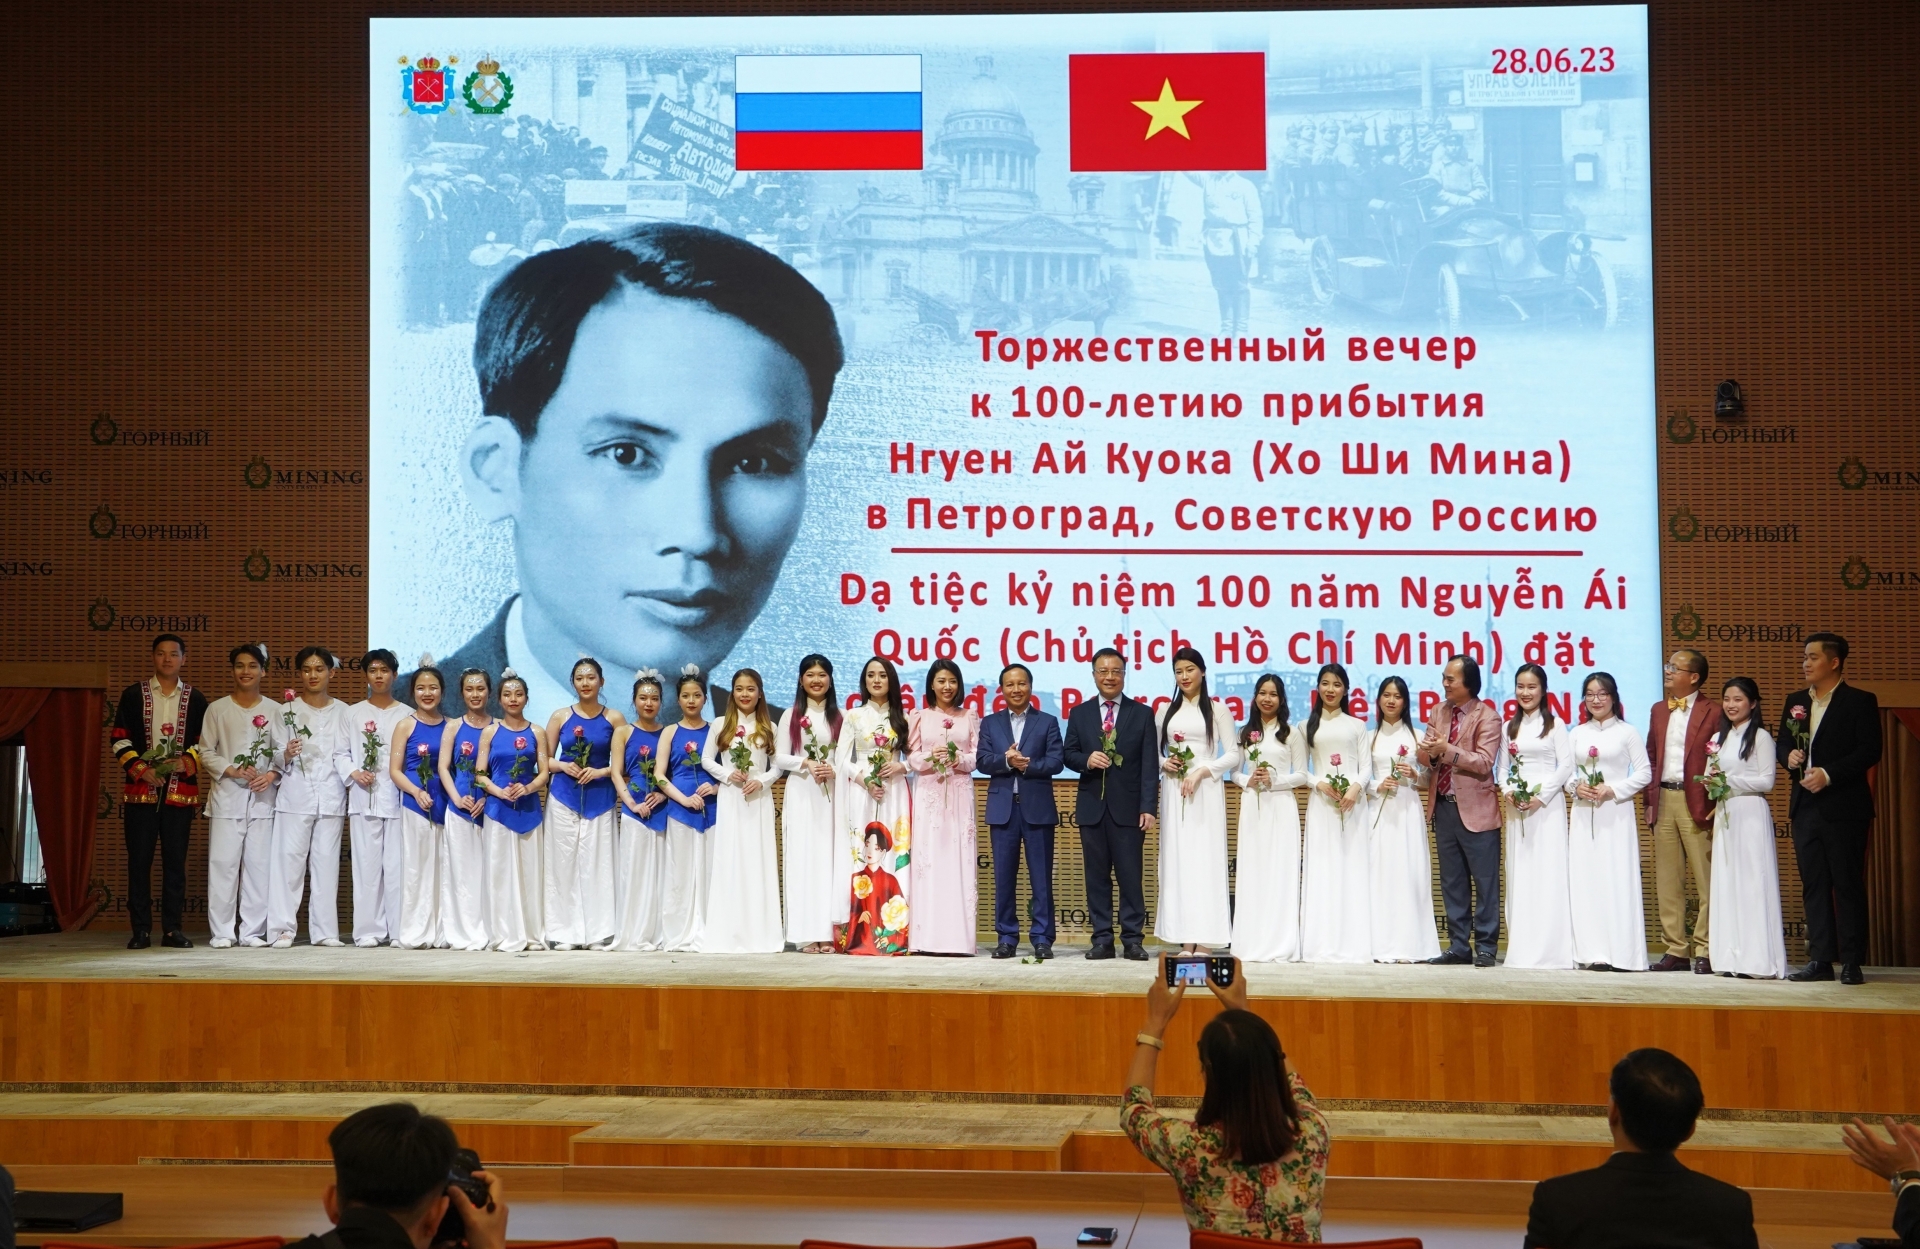 在俄越南留学生、圣彼得堡矿业大学学生以及印度尼西亚、缅甸留学生为观众带来一场精彩的演出。